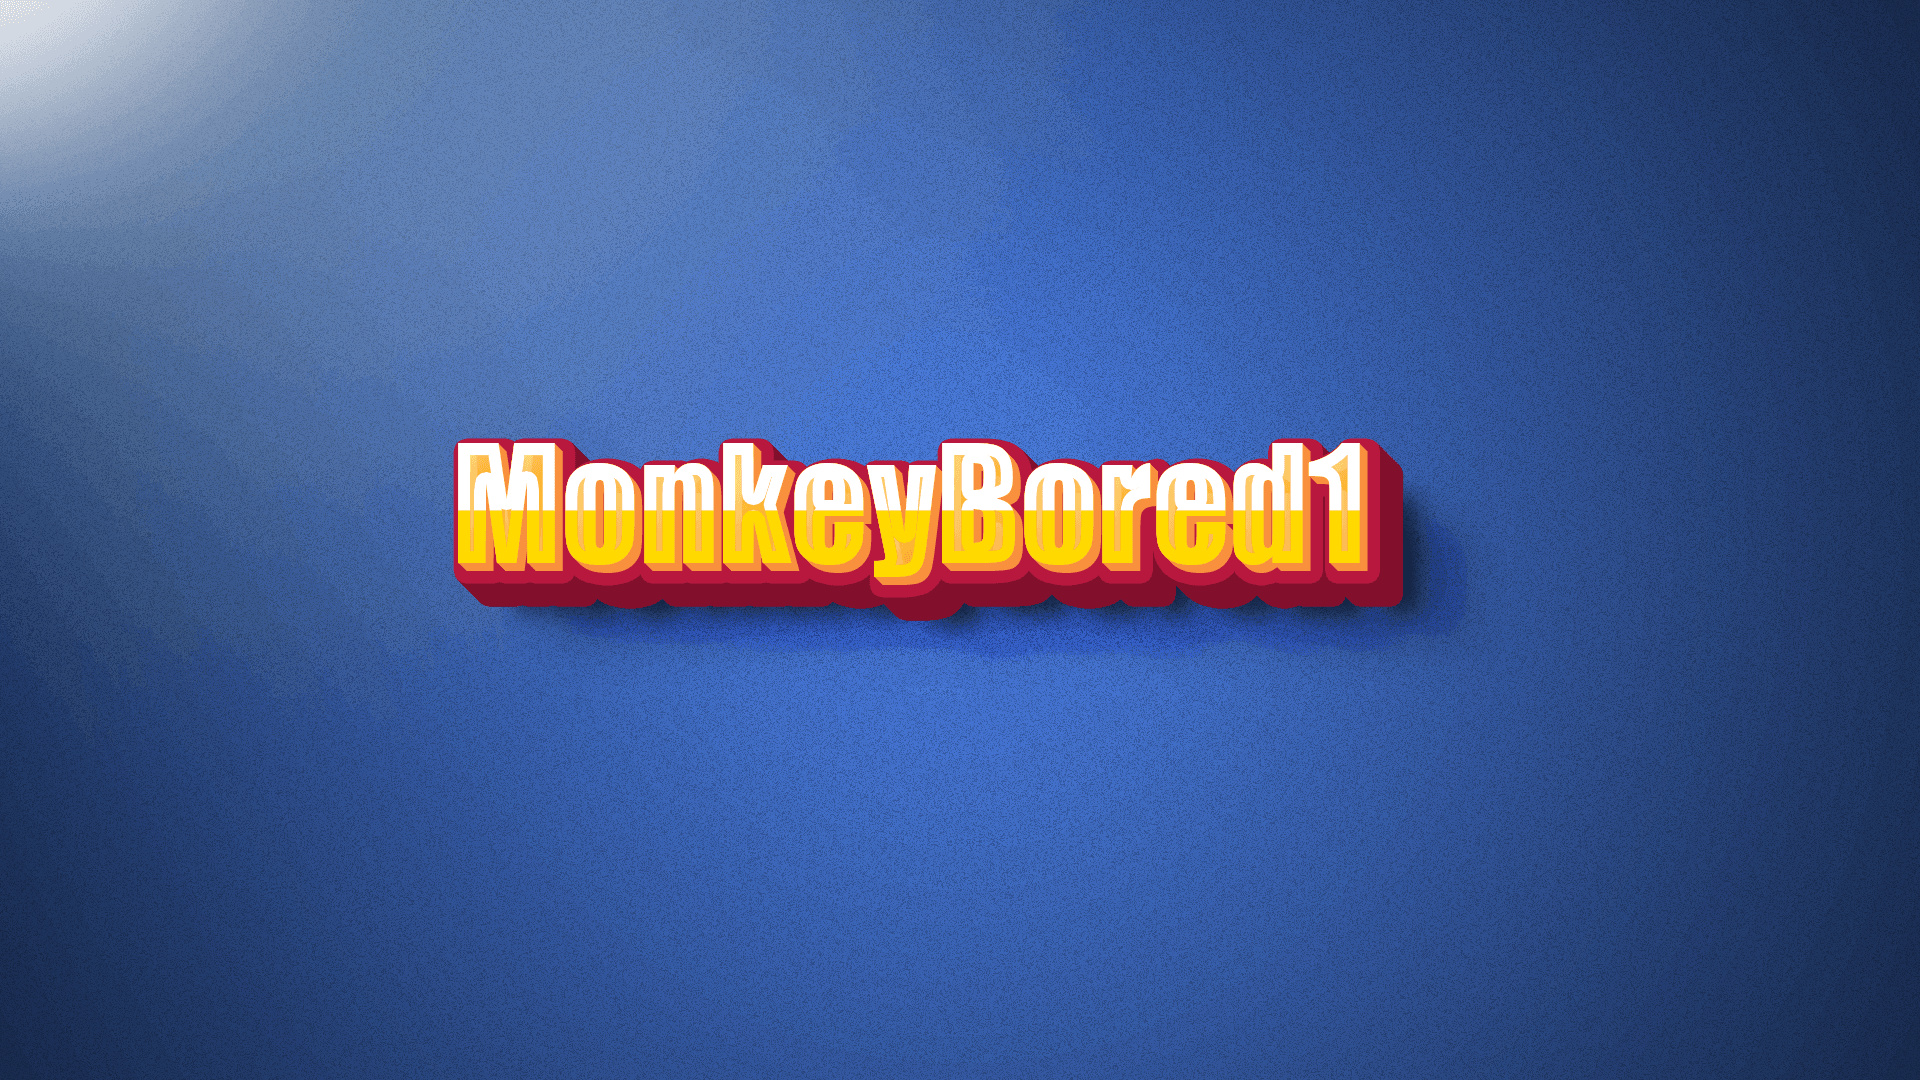 MonkeyBored1 banner